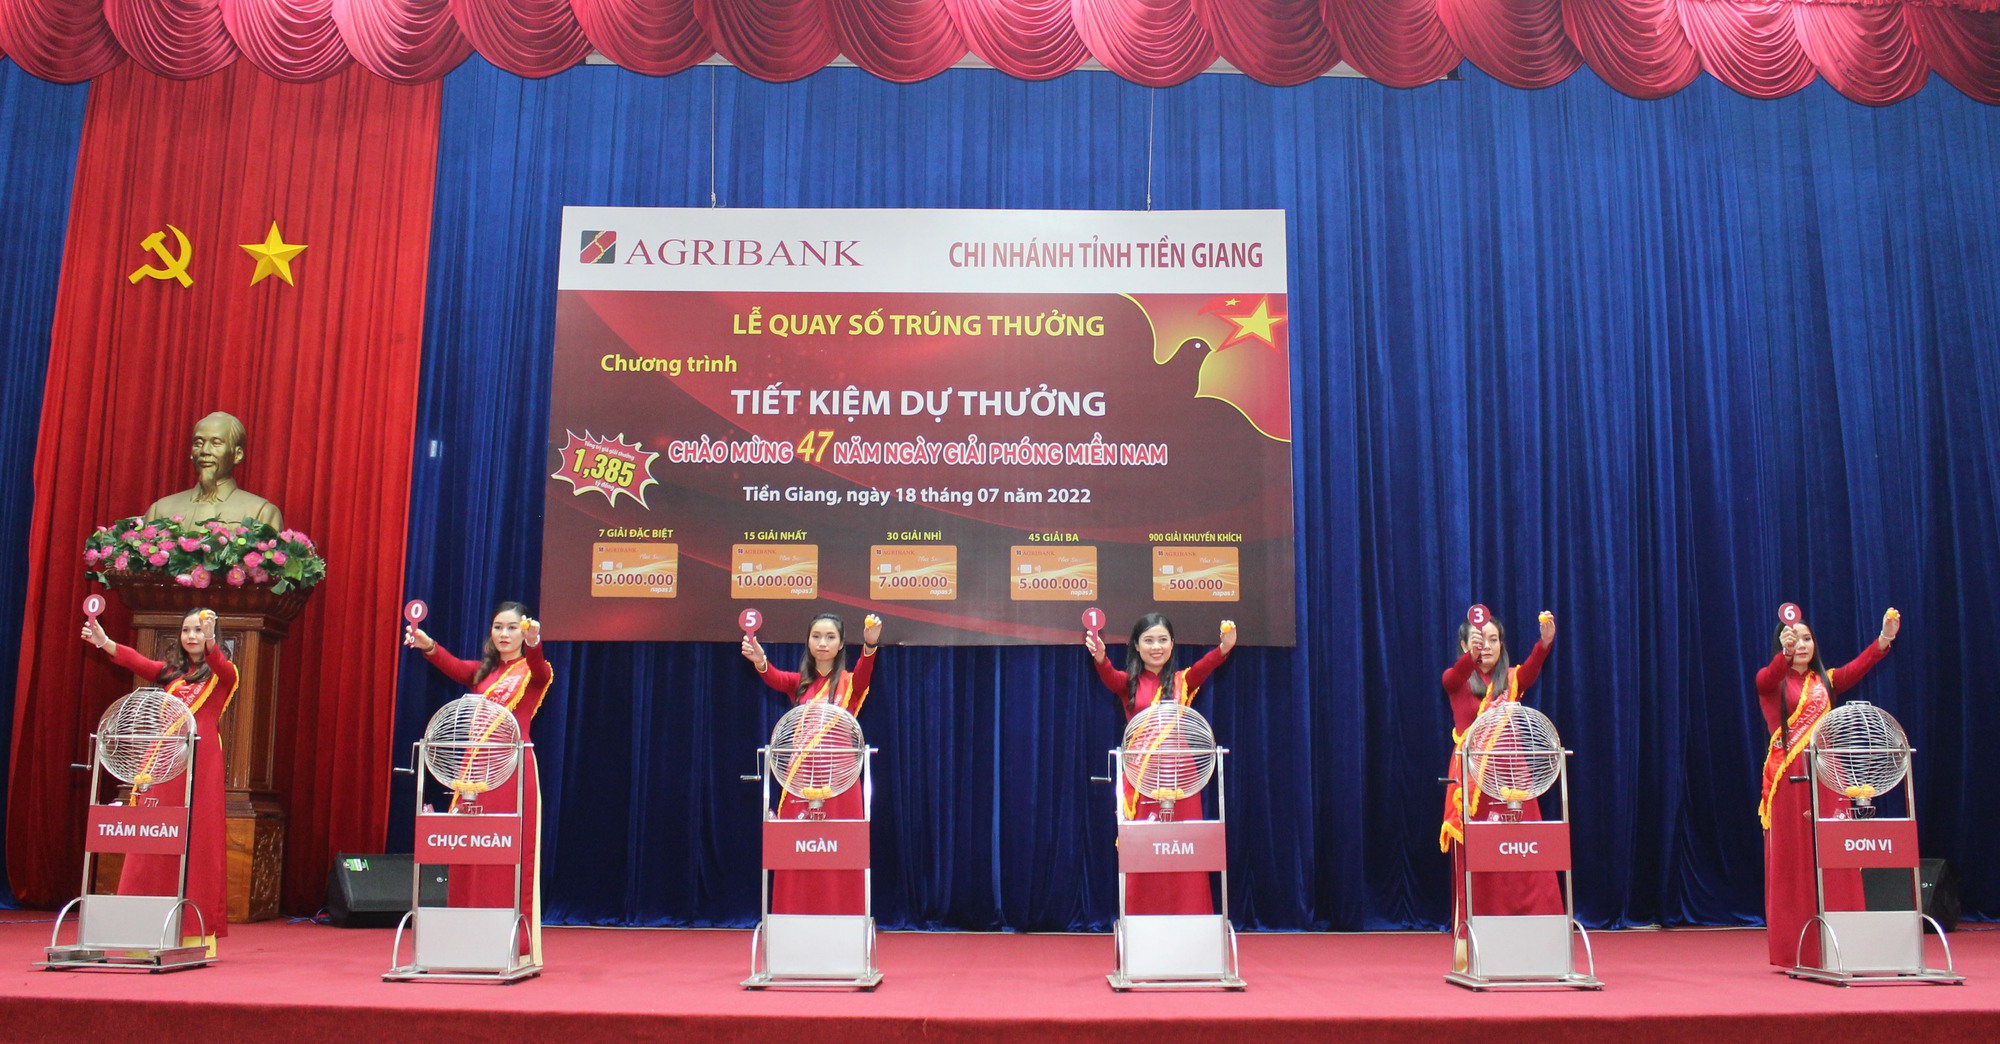 Agribank Tiền Giang: 997 khách hàng trúng thưởng từ Chương trình huy động Tiết kiệm dự thưởng - Ảnh 1.